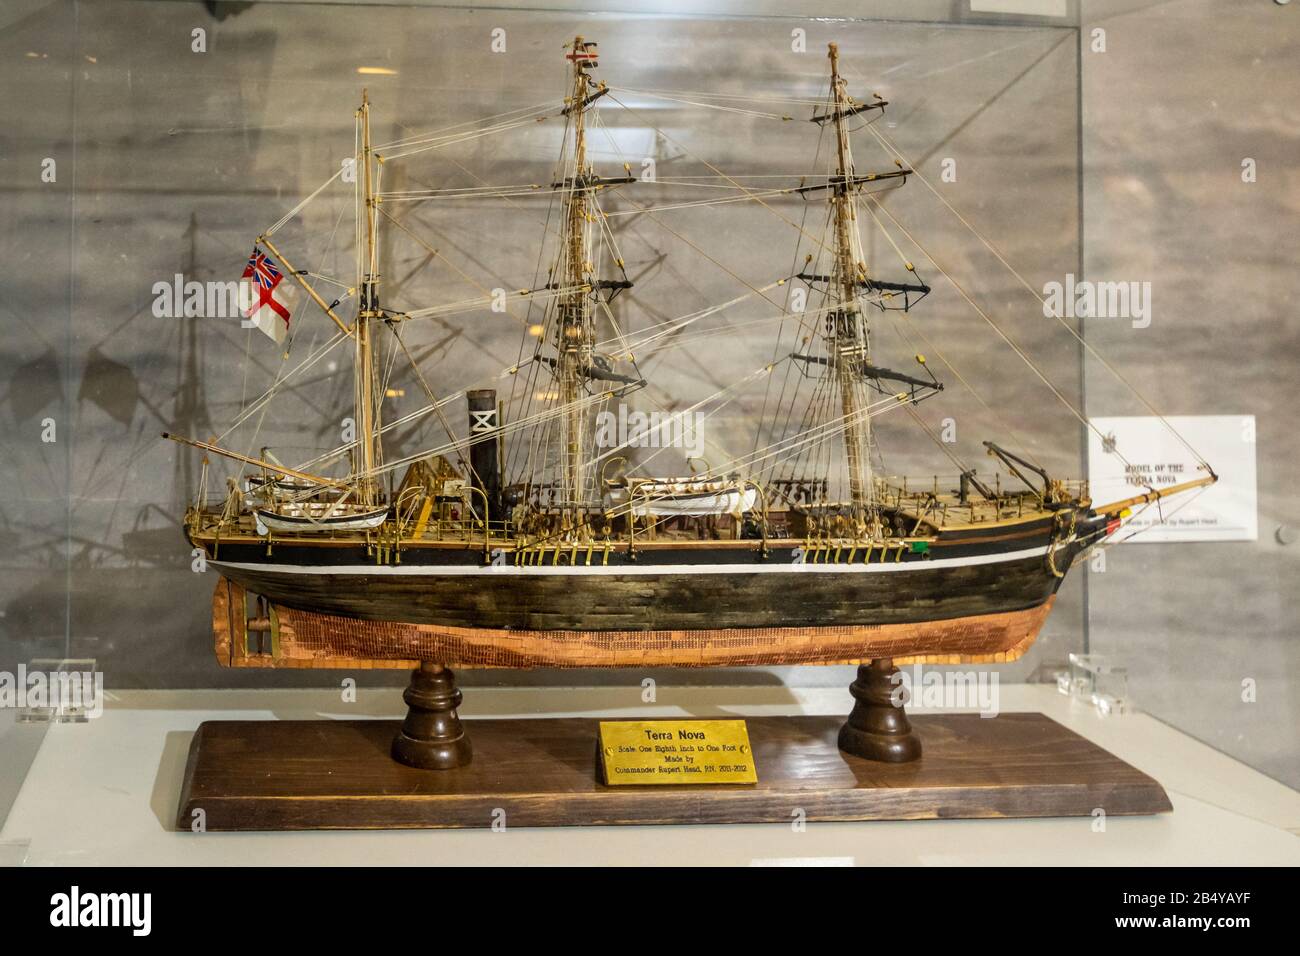 Ausstellung im Museum in der Oates Collection, Großbritannien. Ein Maßstabsmodell Des Terra Nova-Schiffes, das bei der British Antarctic Expedition von 1910-1913 eingesetzt wurde. Stockfoto